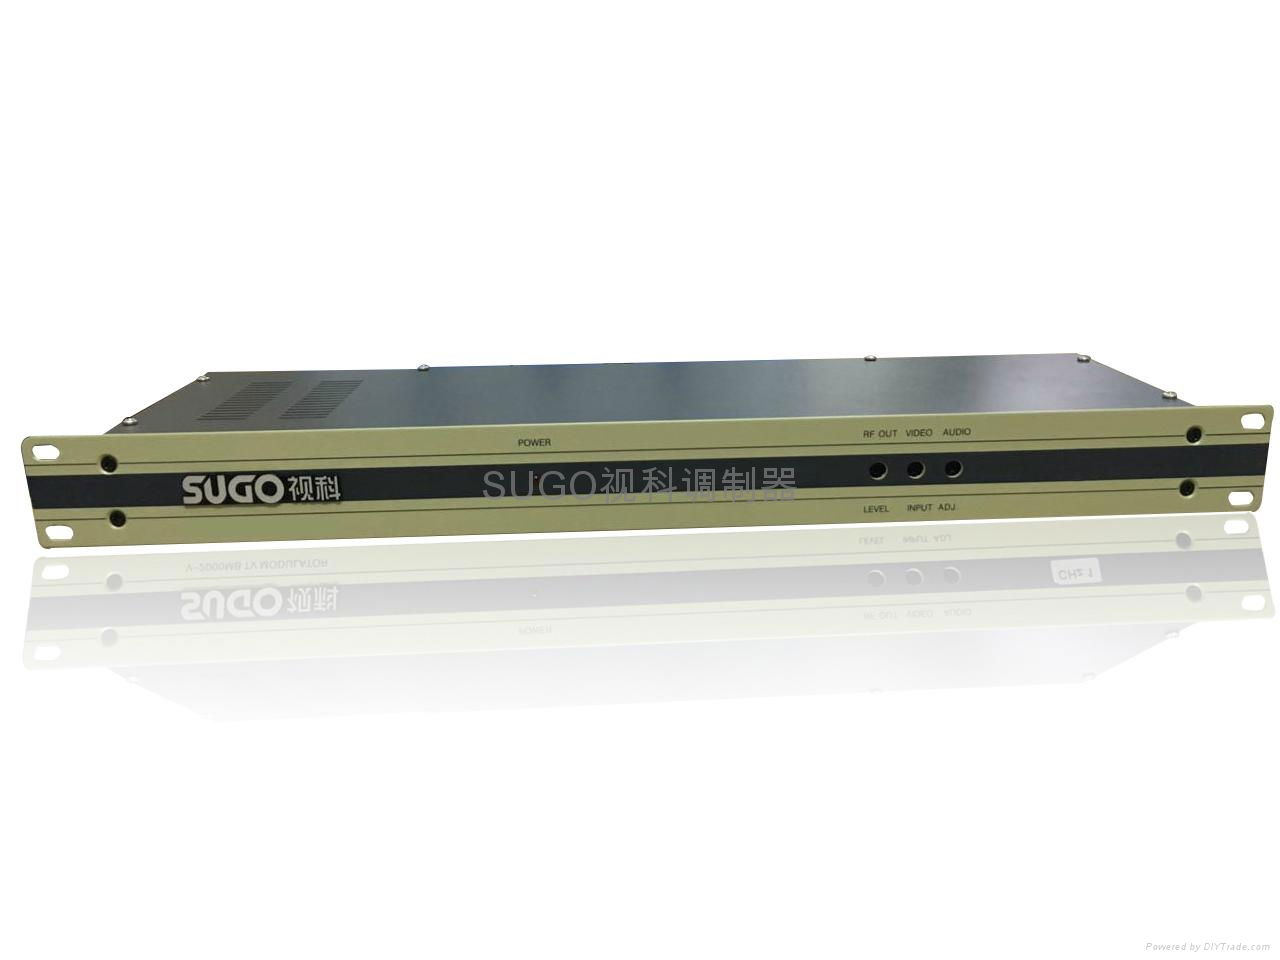 SUGO視科SG-V2000單路經濟型固定頻率調製器 2